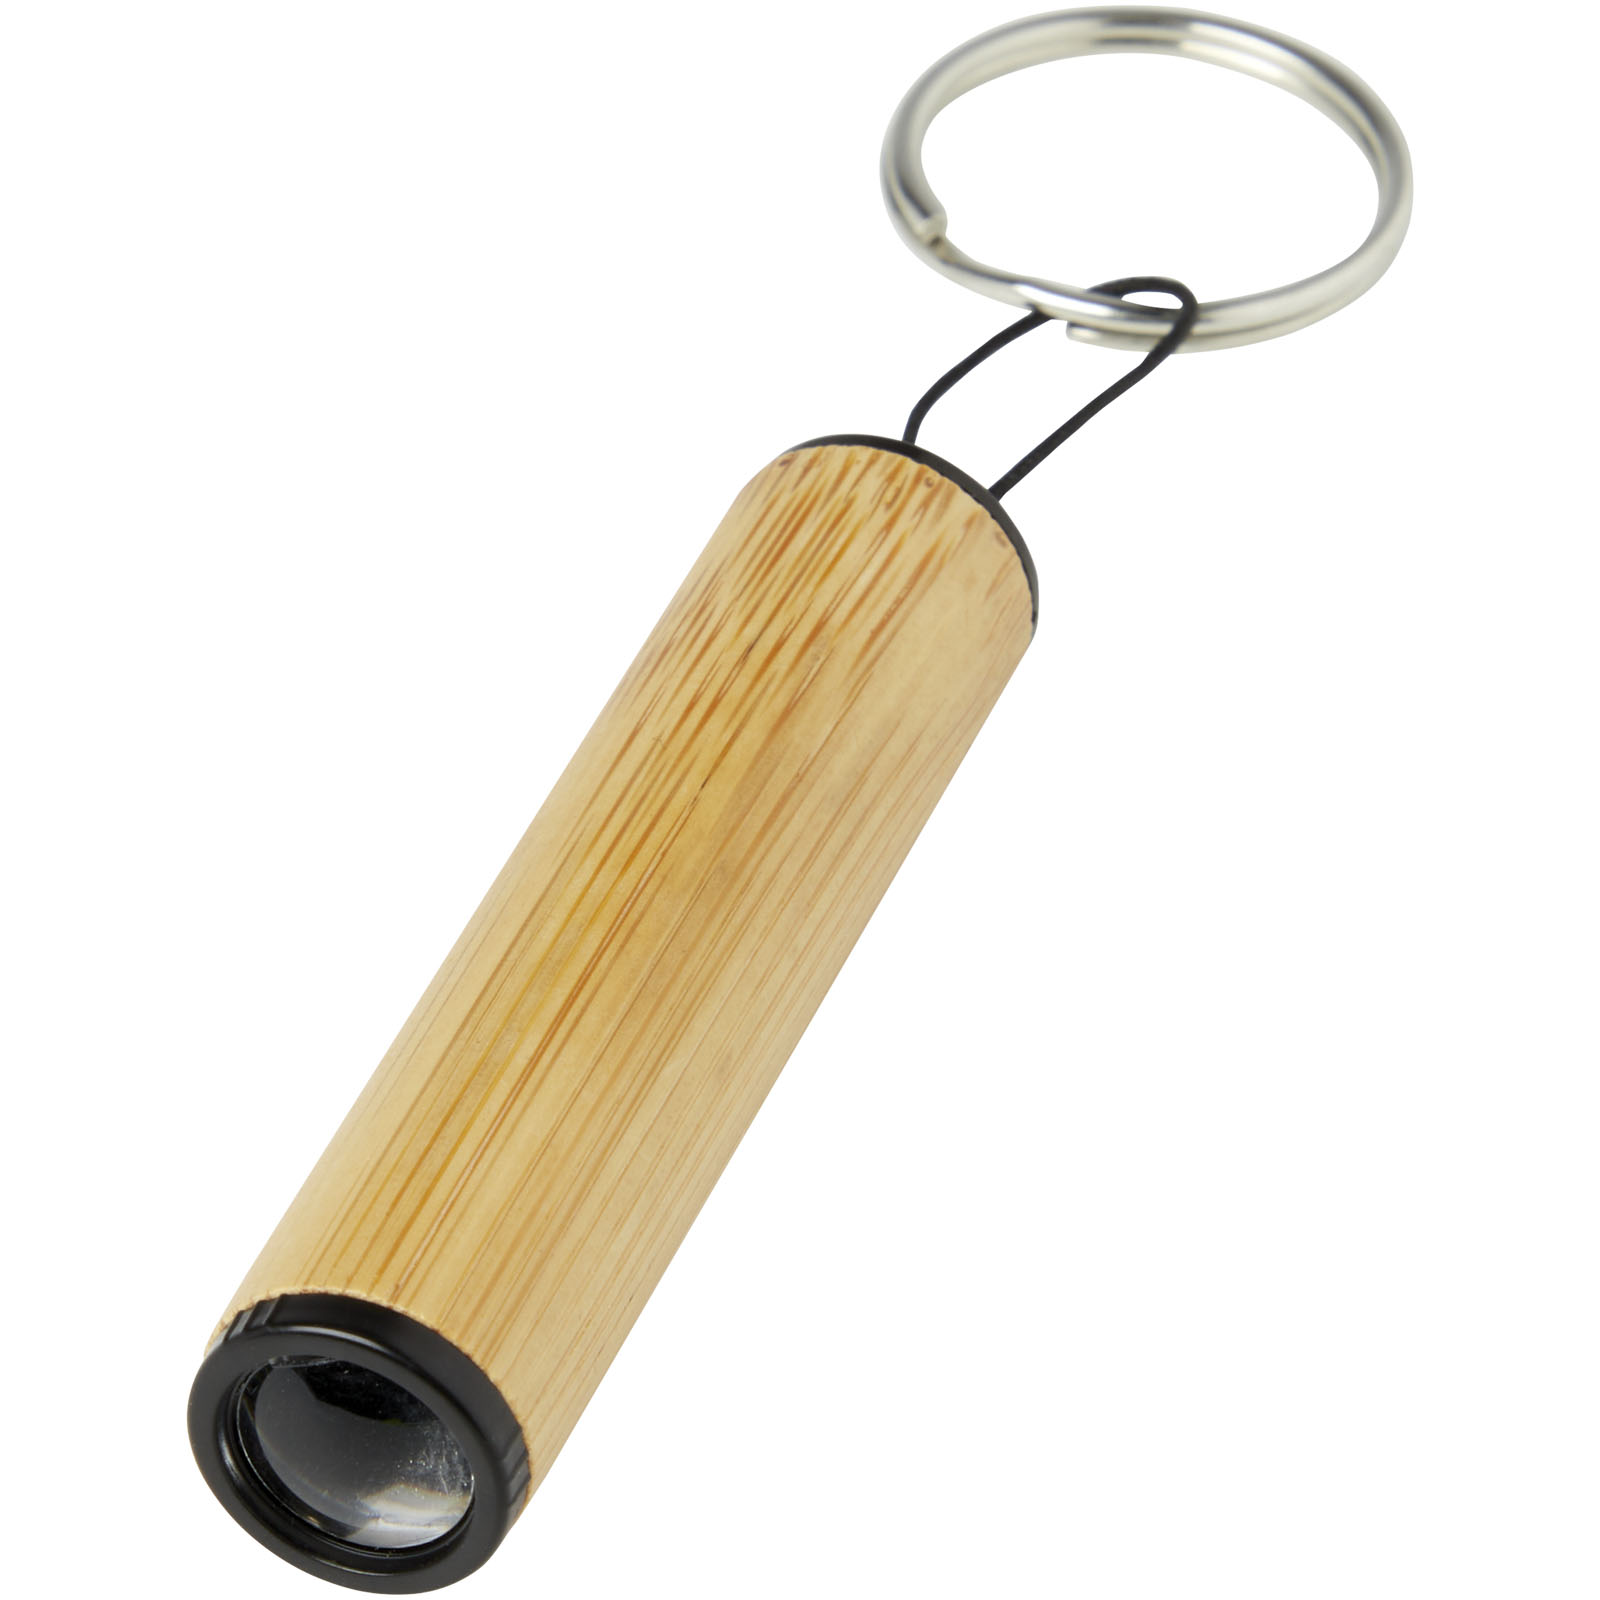 Outils et accessoires pour la voiture - Porte-clés Cane en bambou avec lumière